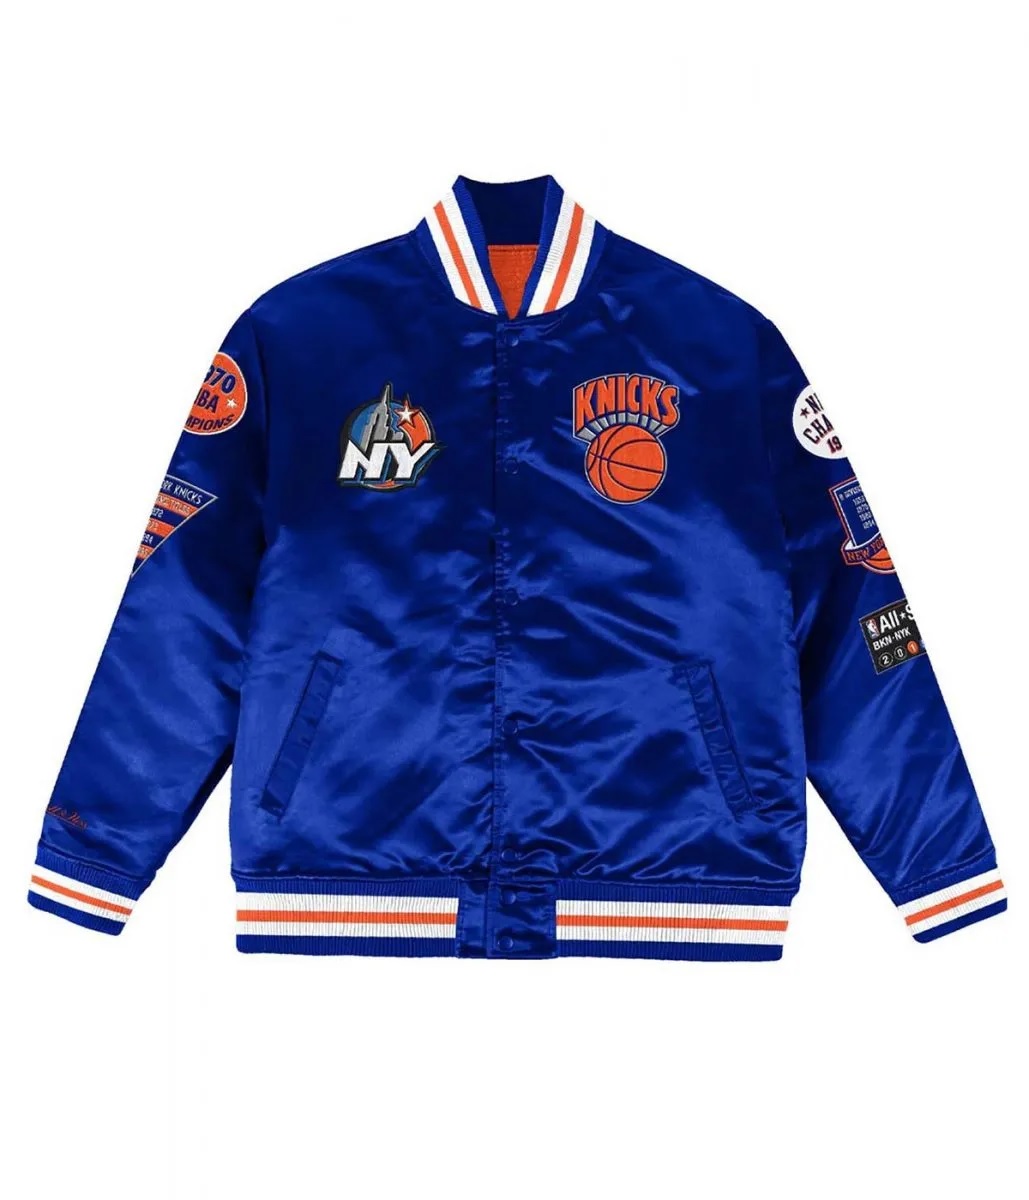 NY Knicks Champ City Bomber Satin Royal Blue Jacket